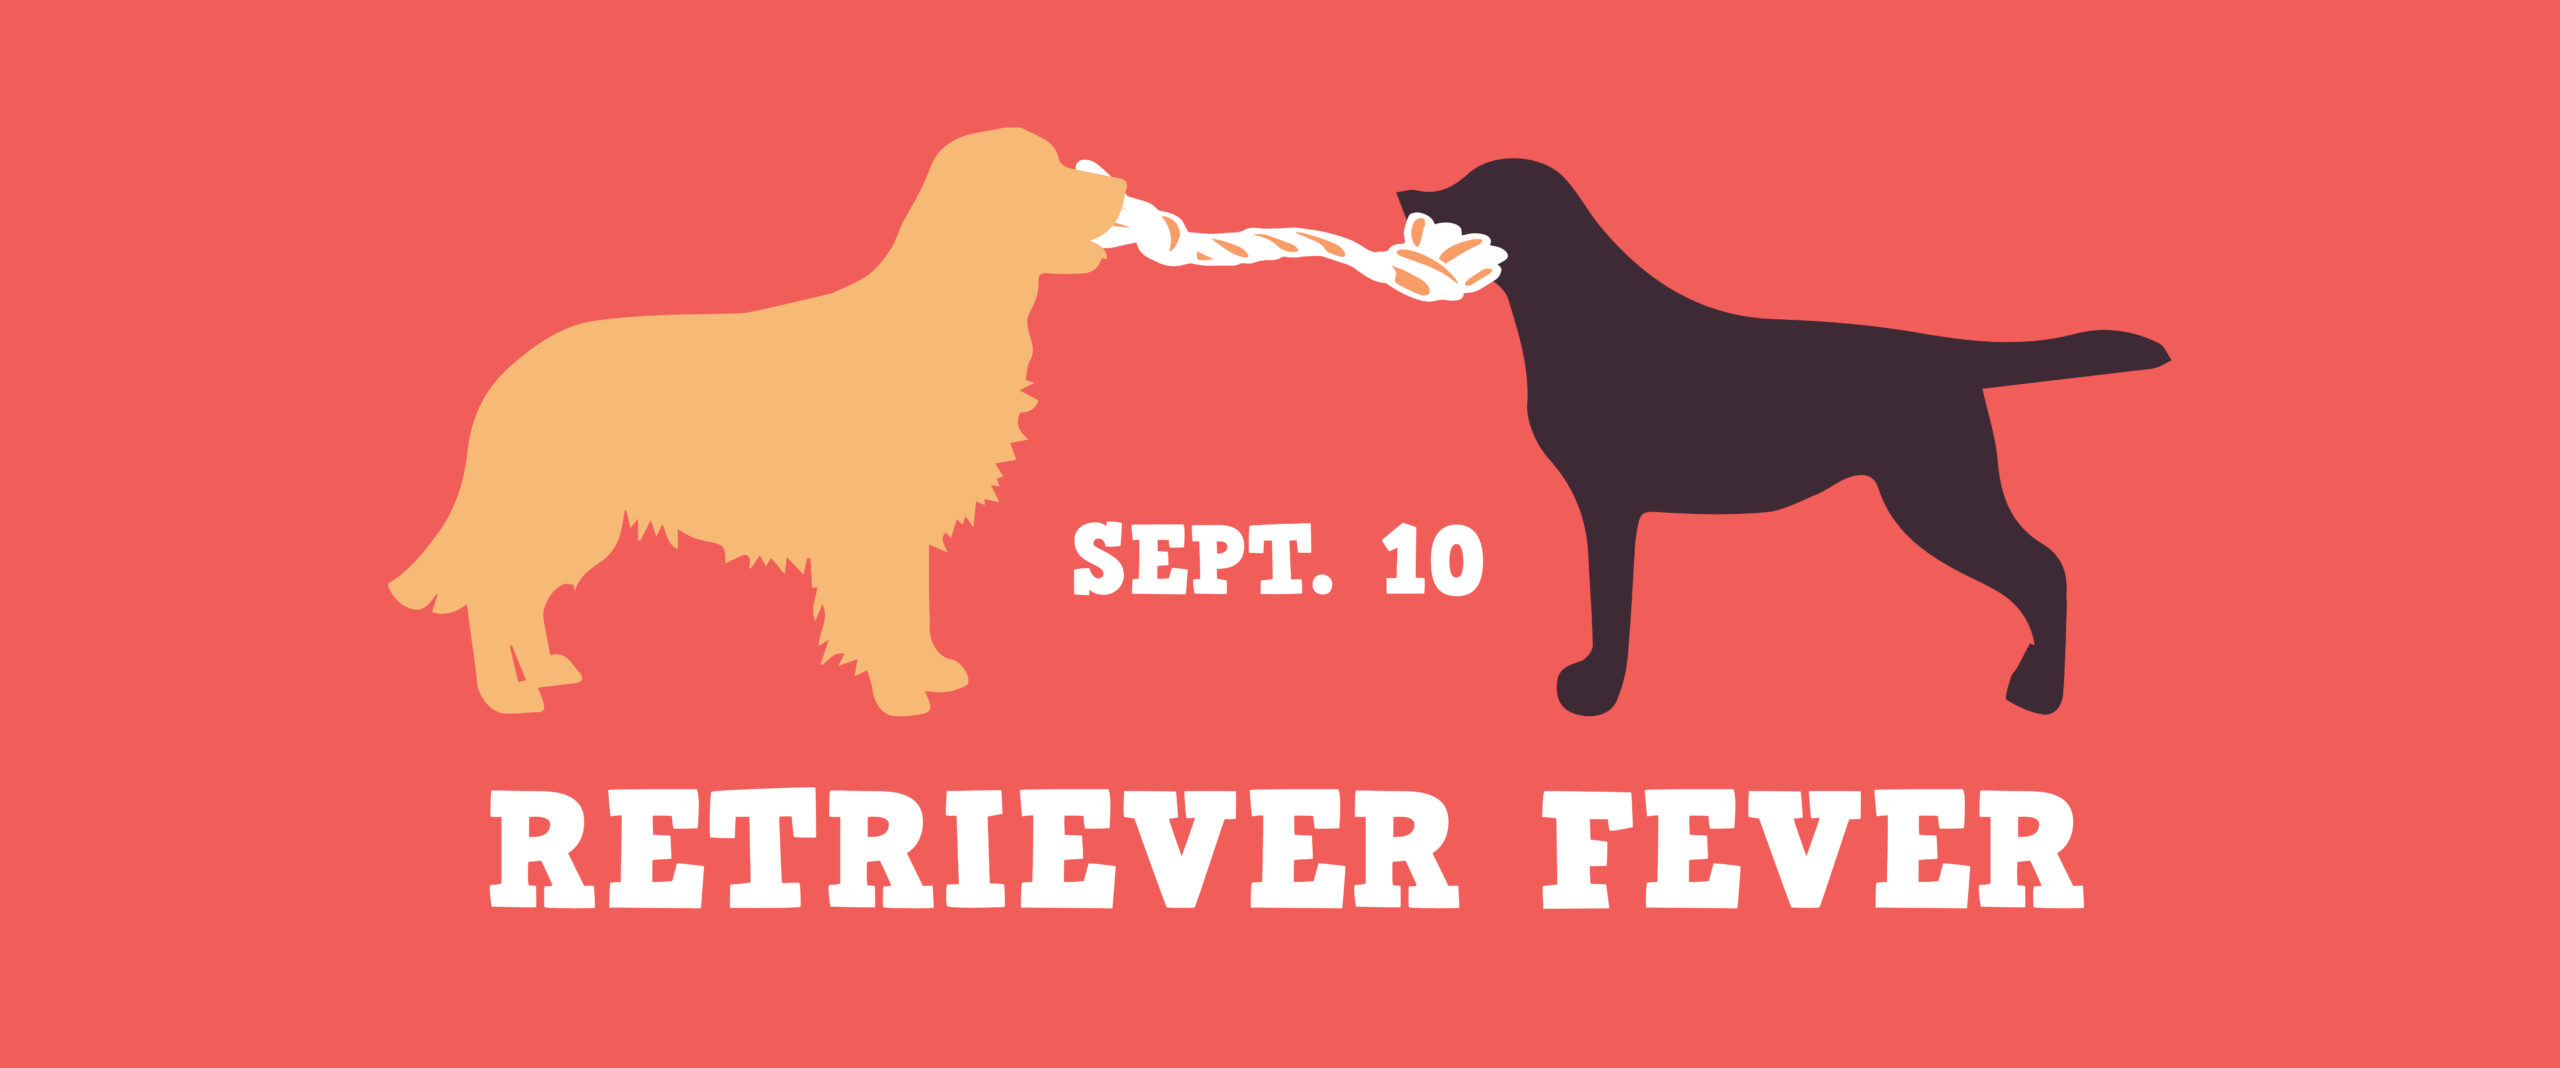 Retriever Fever September 10